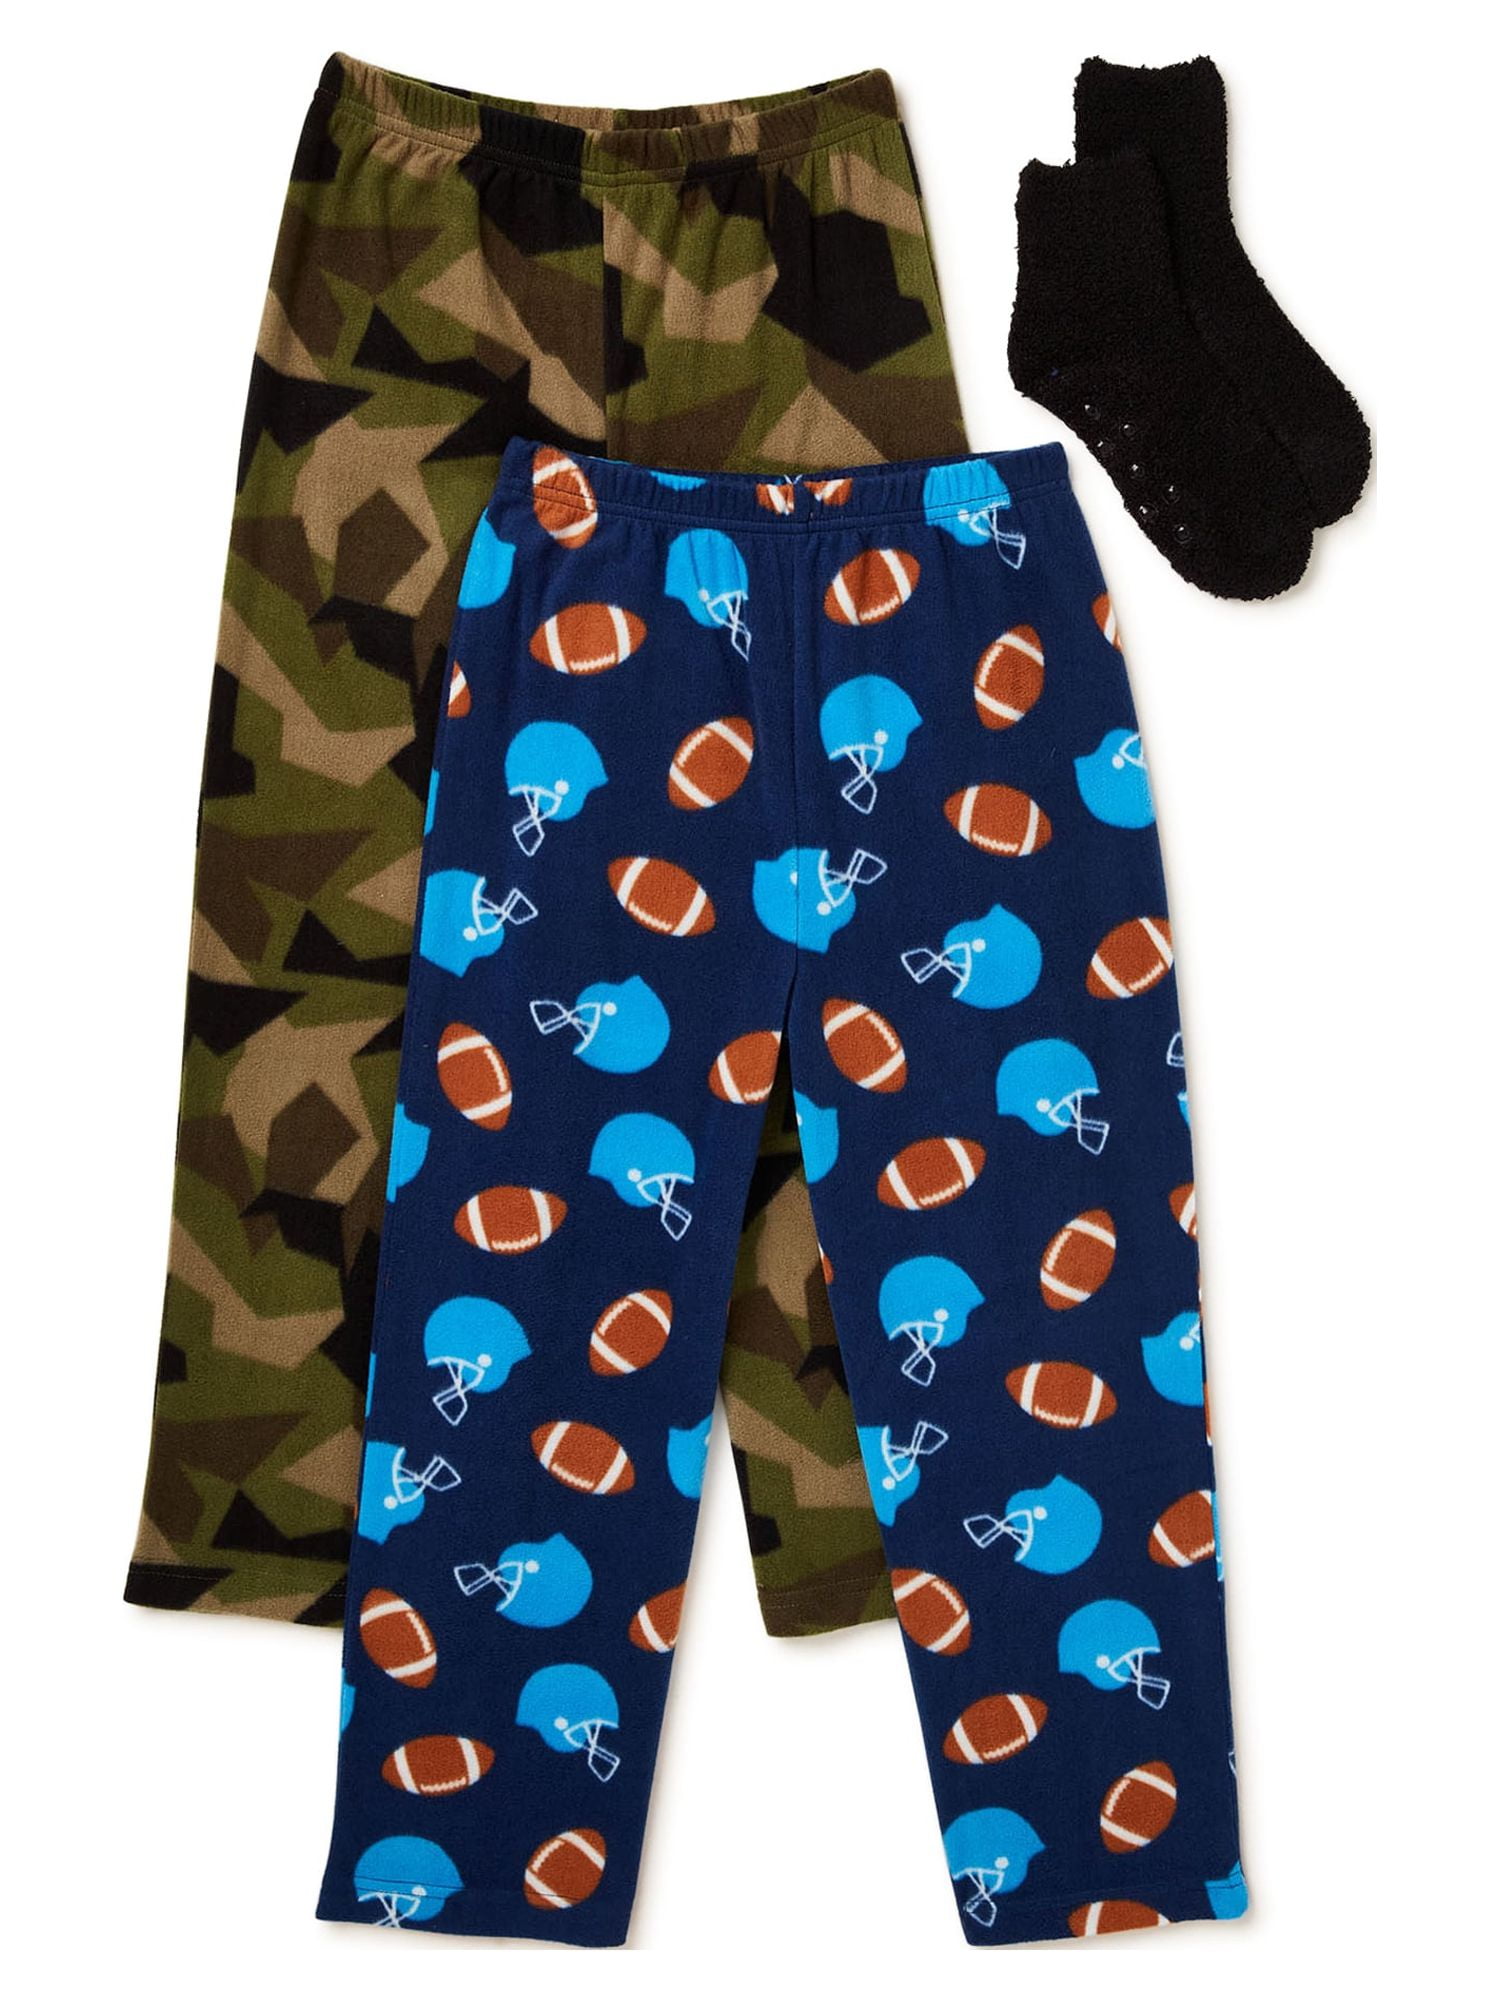 Prince of Sleep Plush Pajama Pants - Fleece PJs for Boys - Just Love Fashion